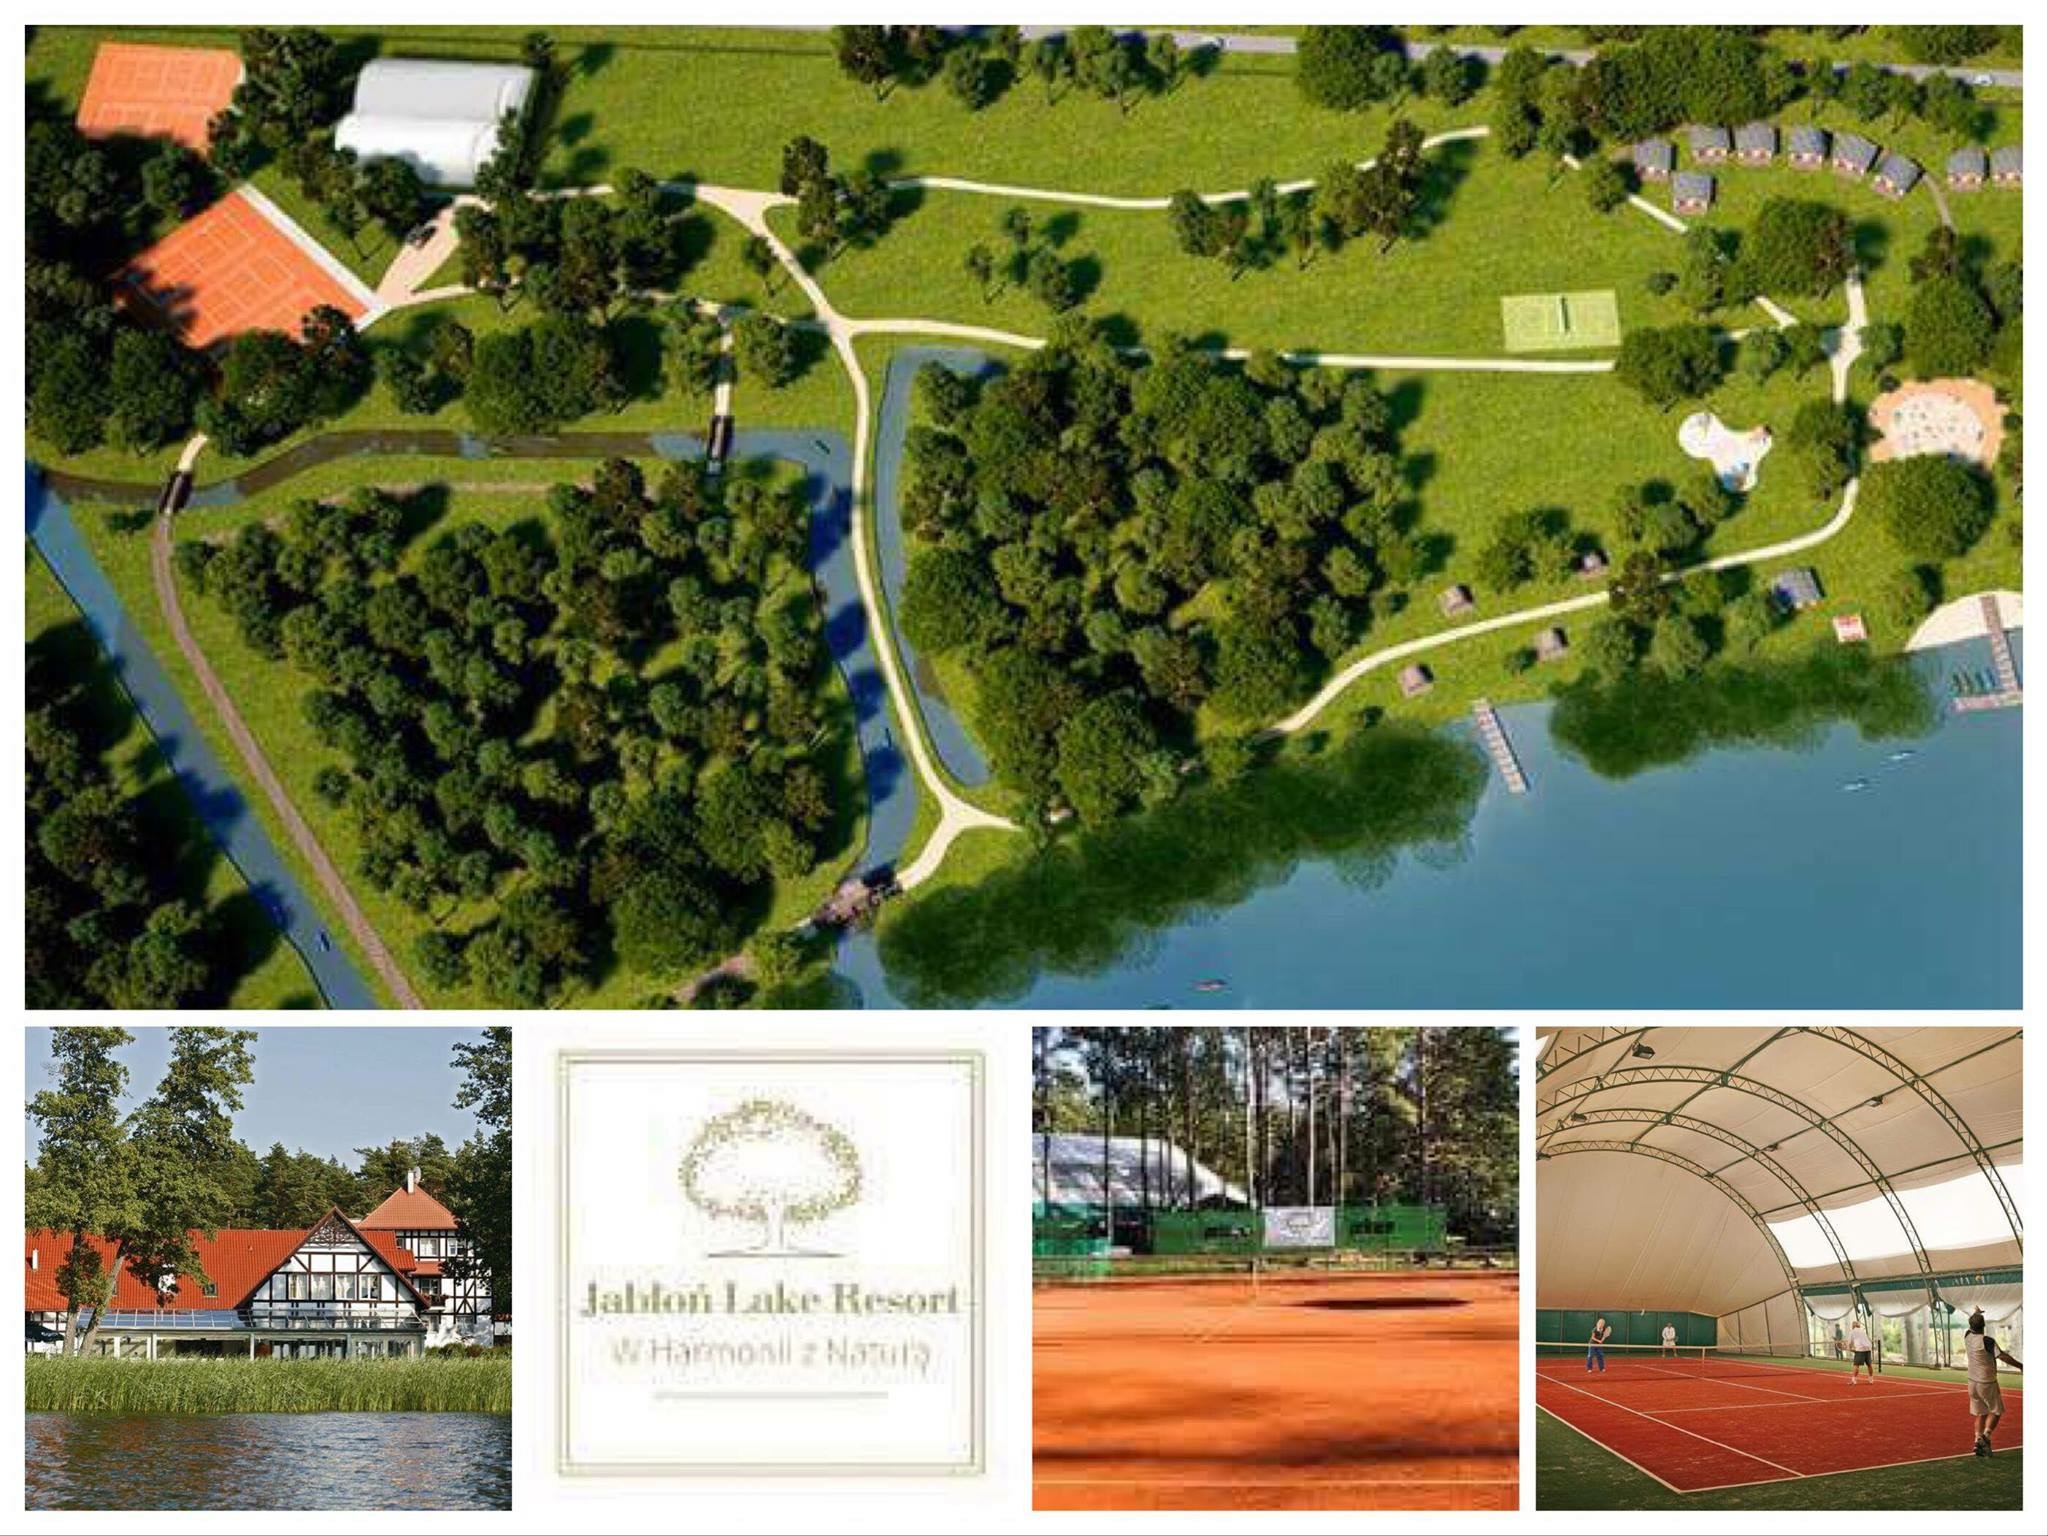 Czerwcowy weekend z tenisem w kurorcie Jabloń Lake Resort